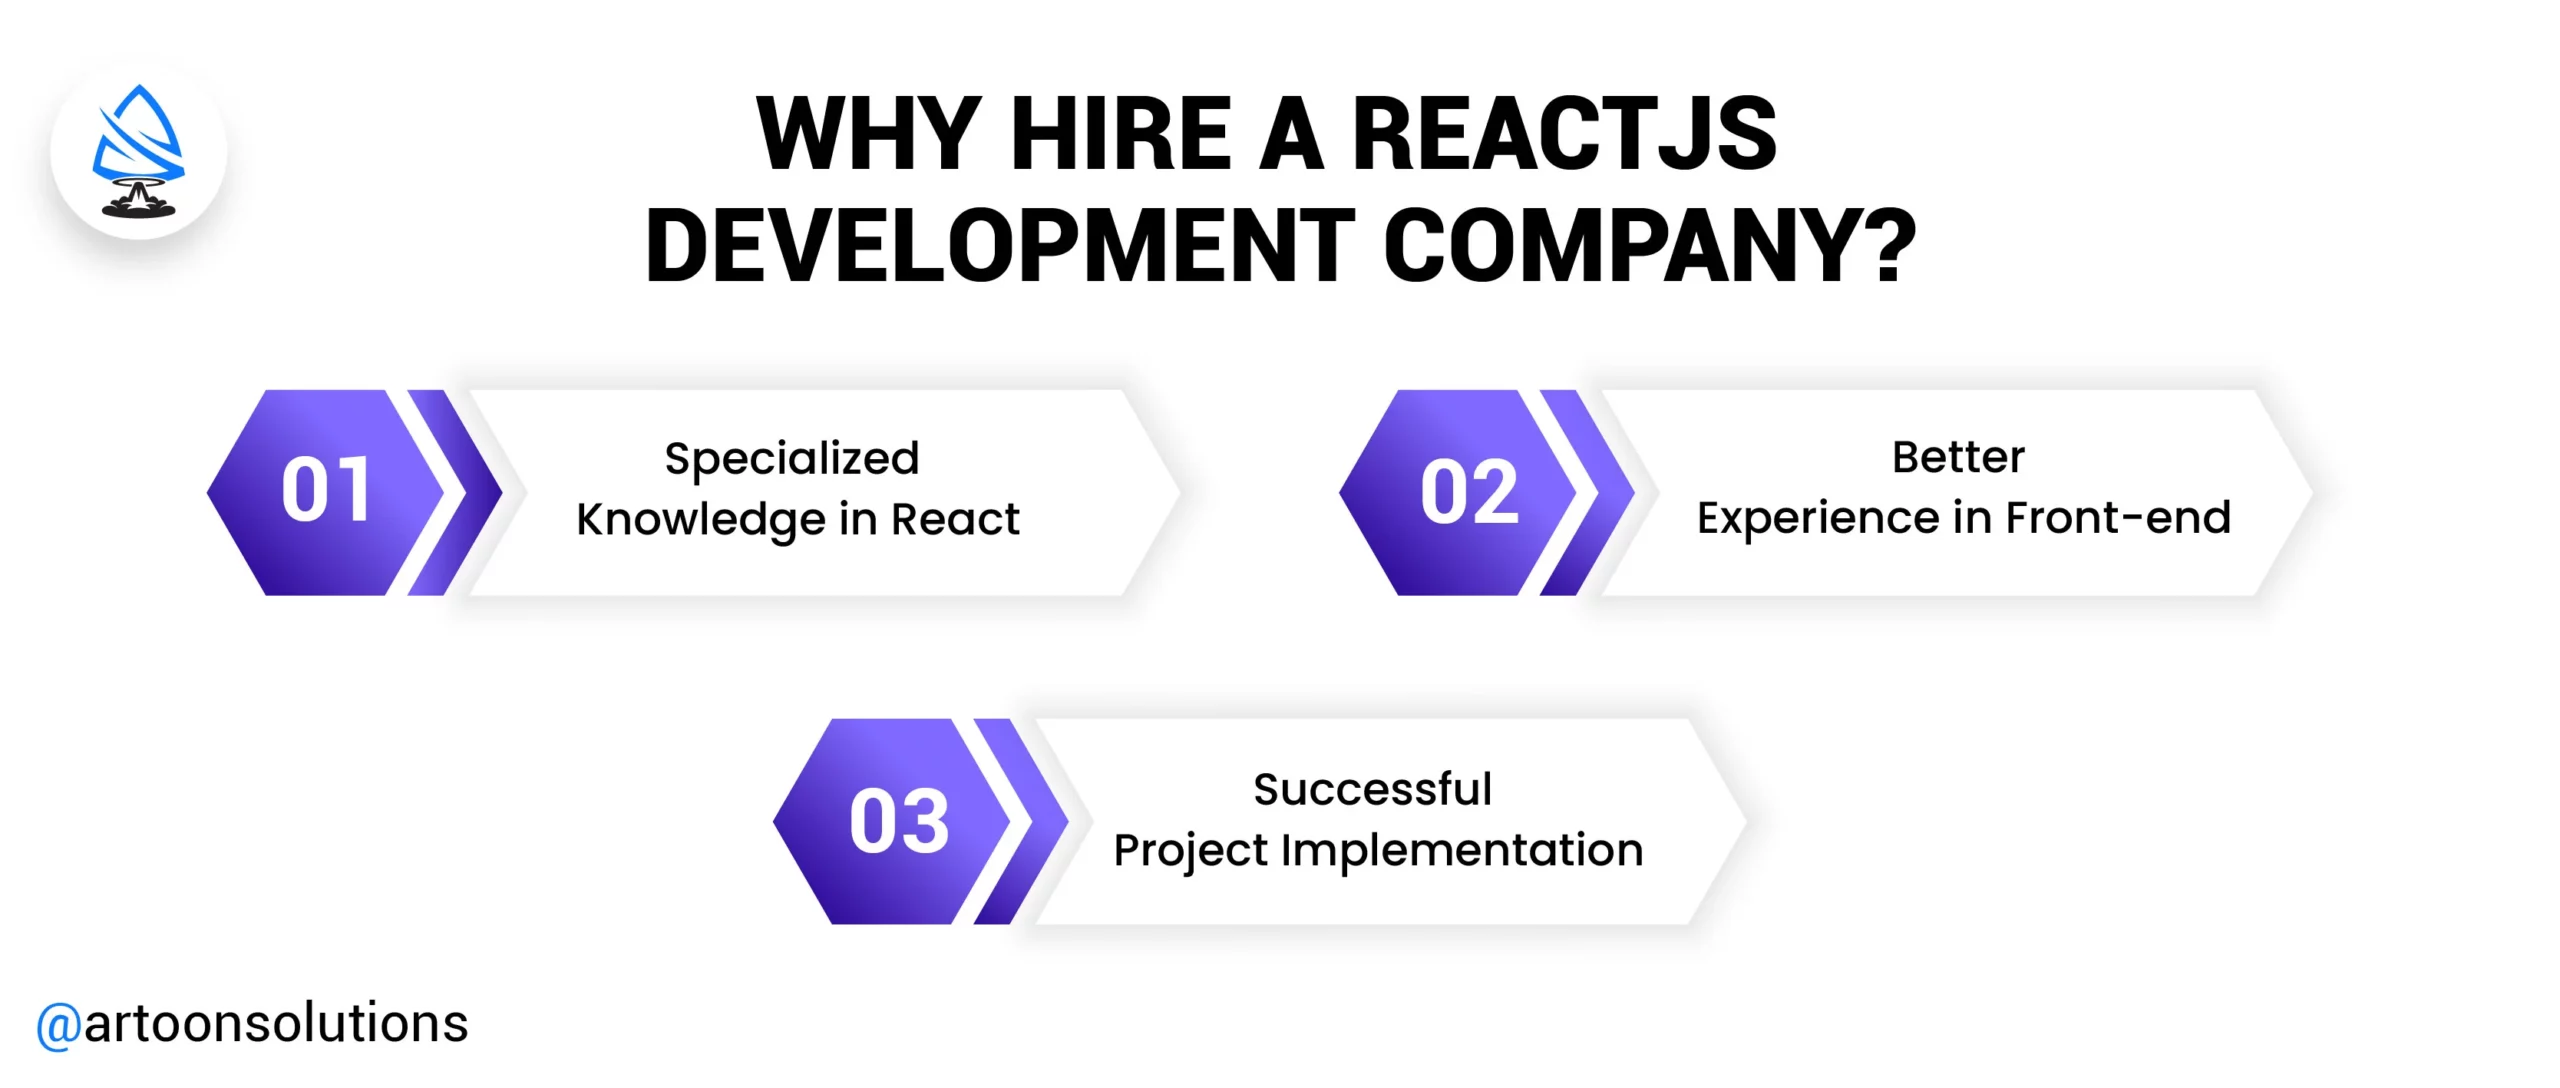 Why Hire a Reactjs Development Company?